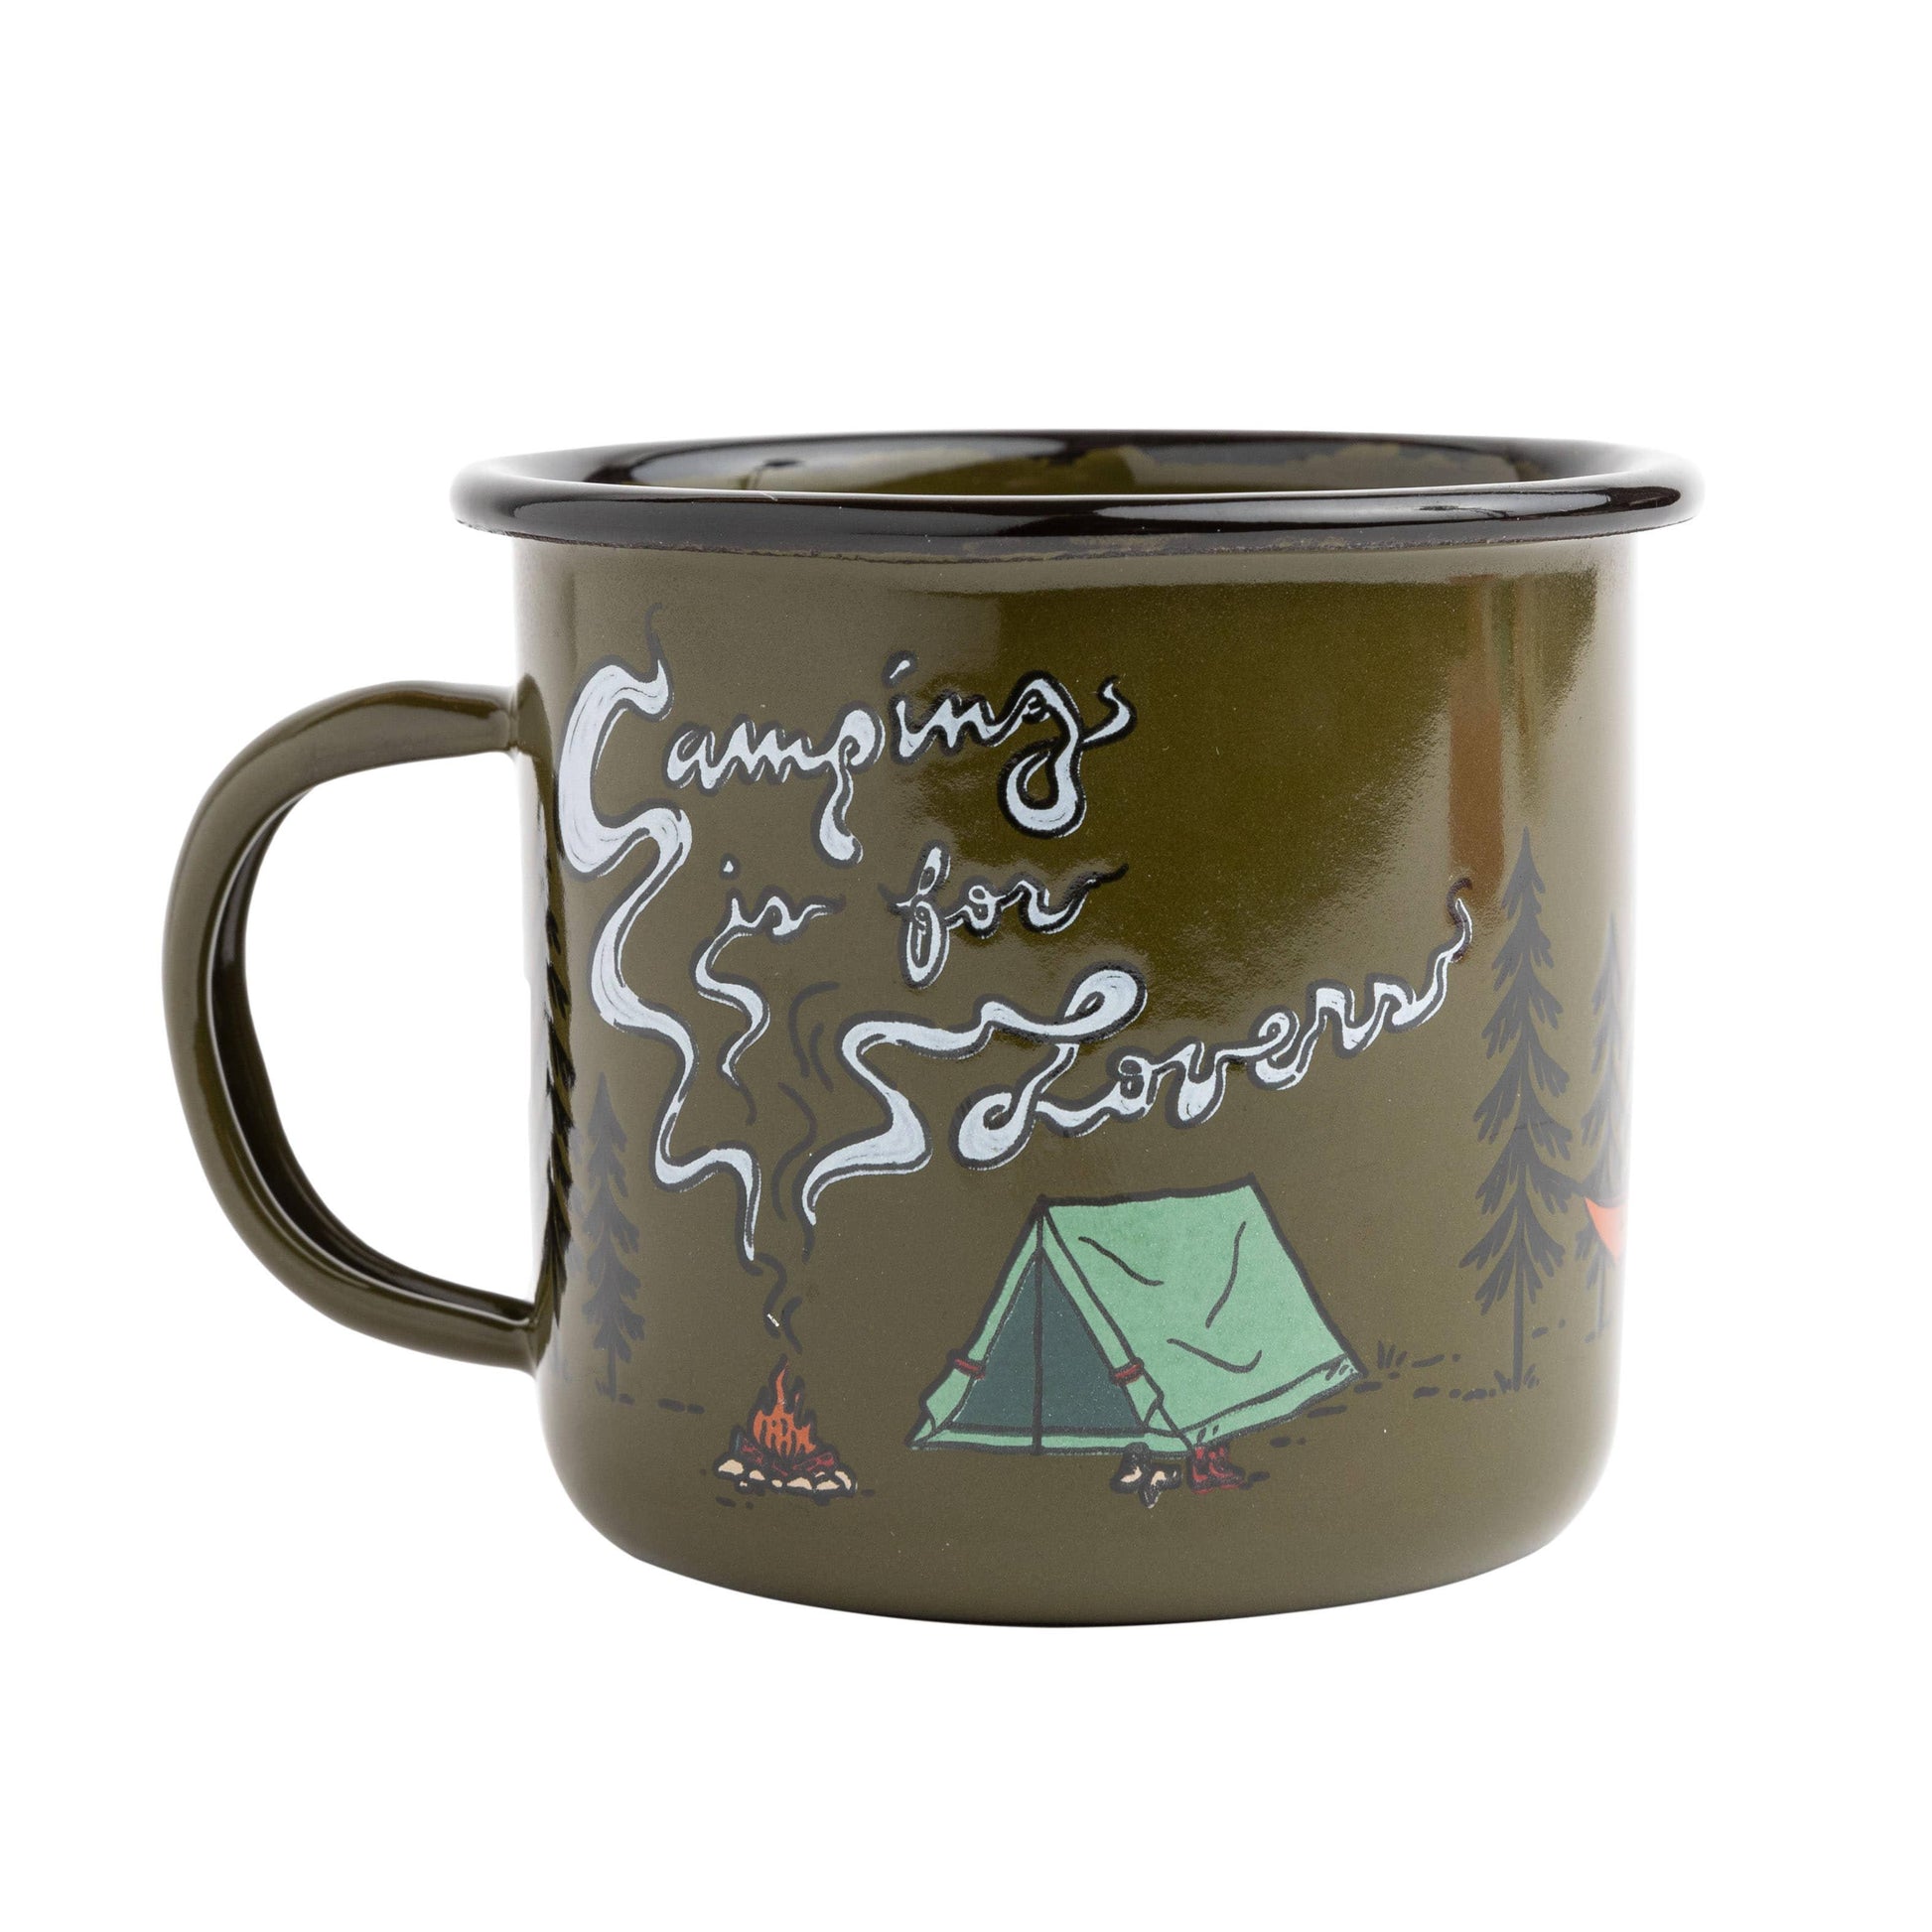 Camping Mugs & Enamel Coffee Mugs